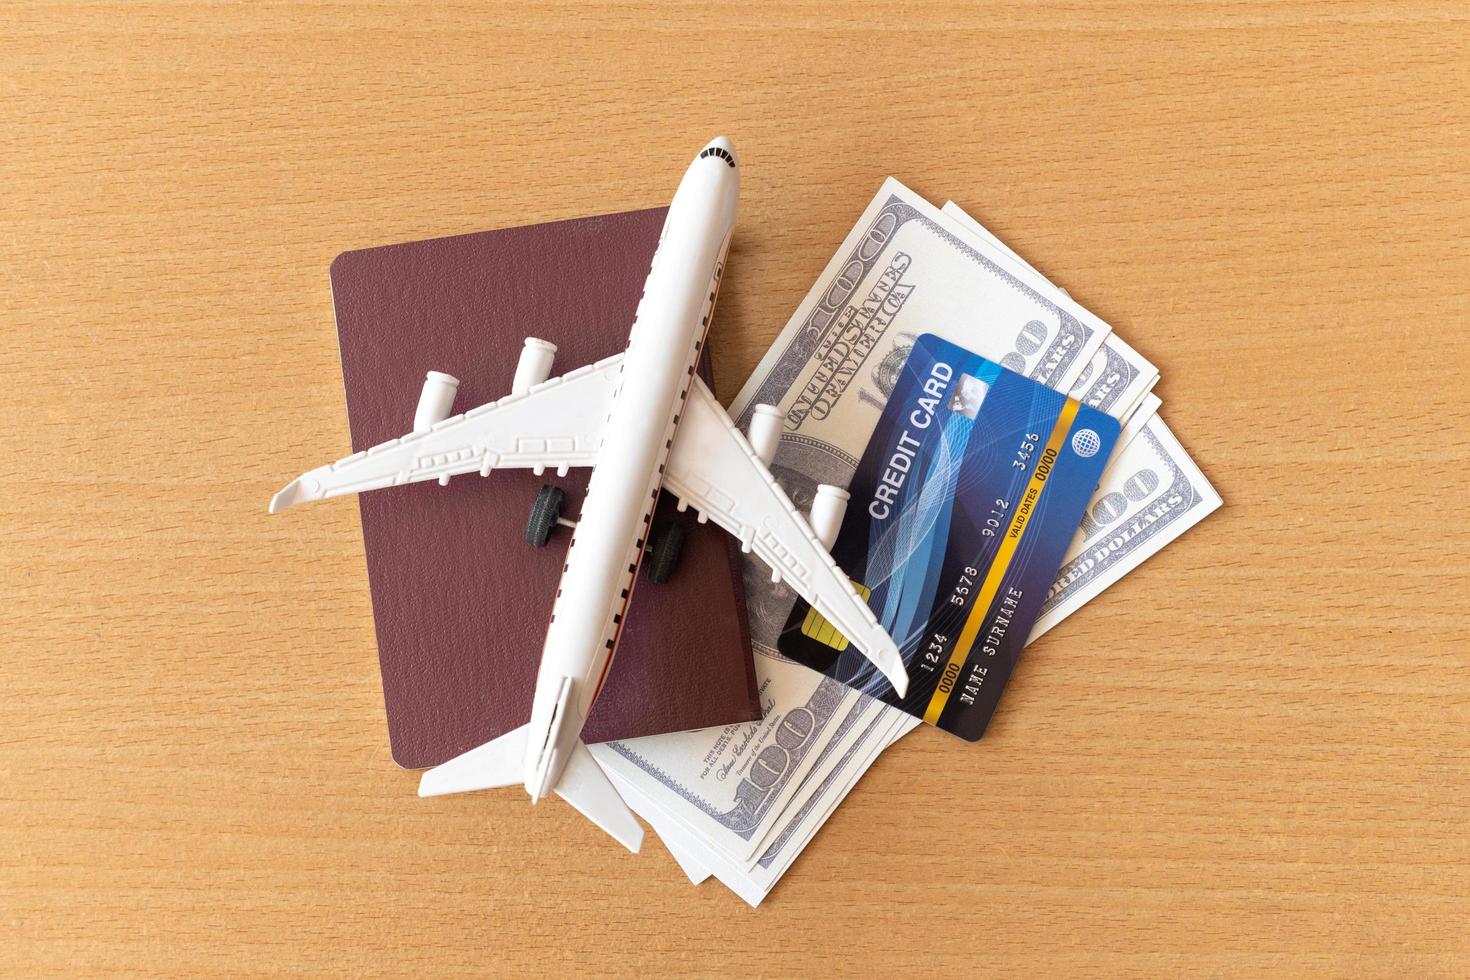 avión de juguete, tarjetas de crédito, dólares y pasaporte en mesa de madera. concepto de viaje foto